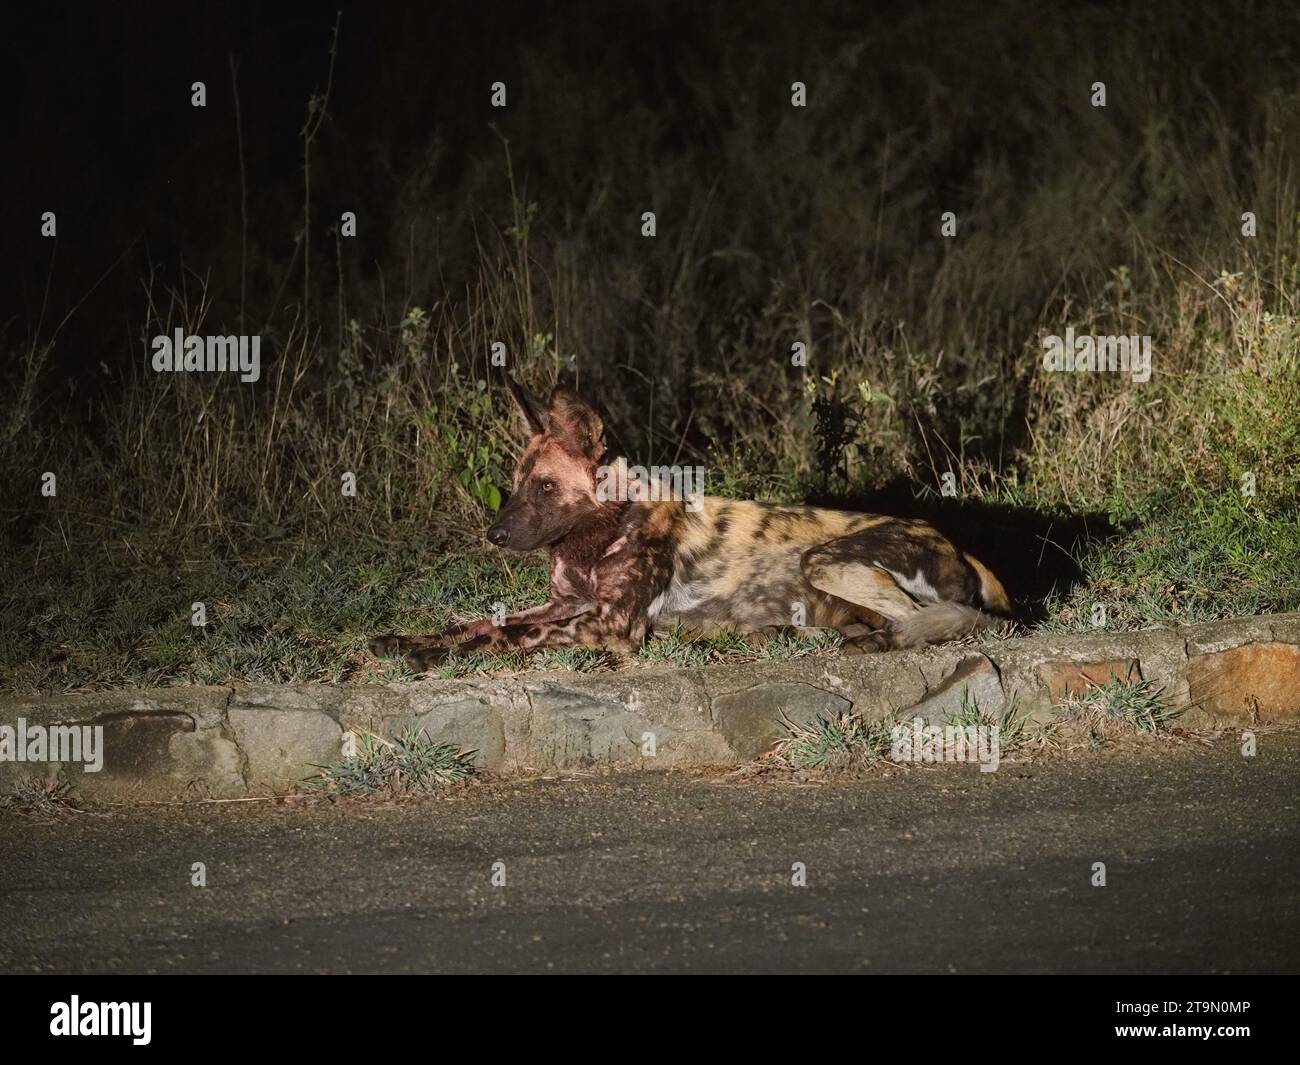 Chien sauvage africain (lycaon pictus) ou chien peint, au bord de la route le soir. Ils sont extrêmement rares. Parc national Kruger, Afrique du Sud Banque D'Images